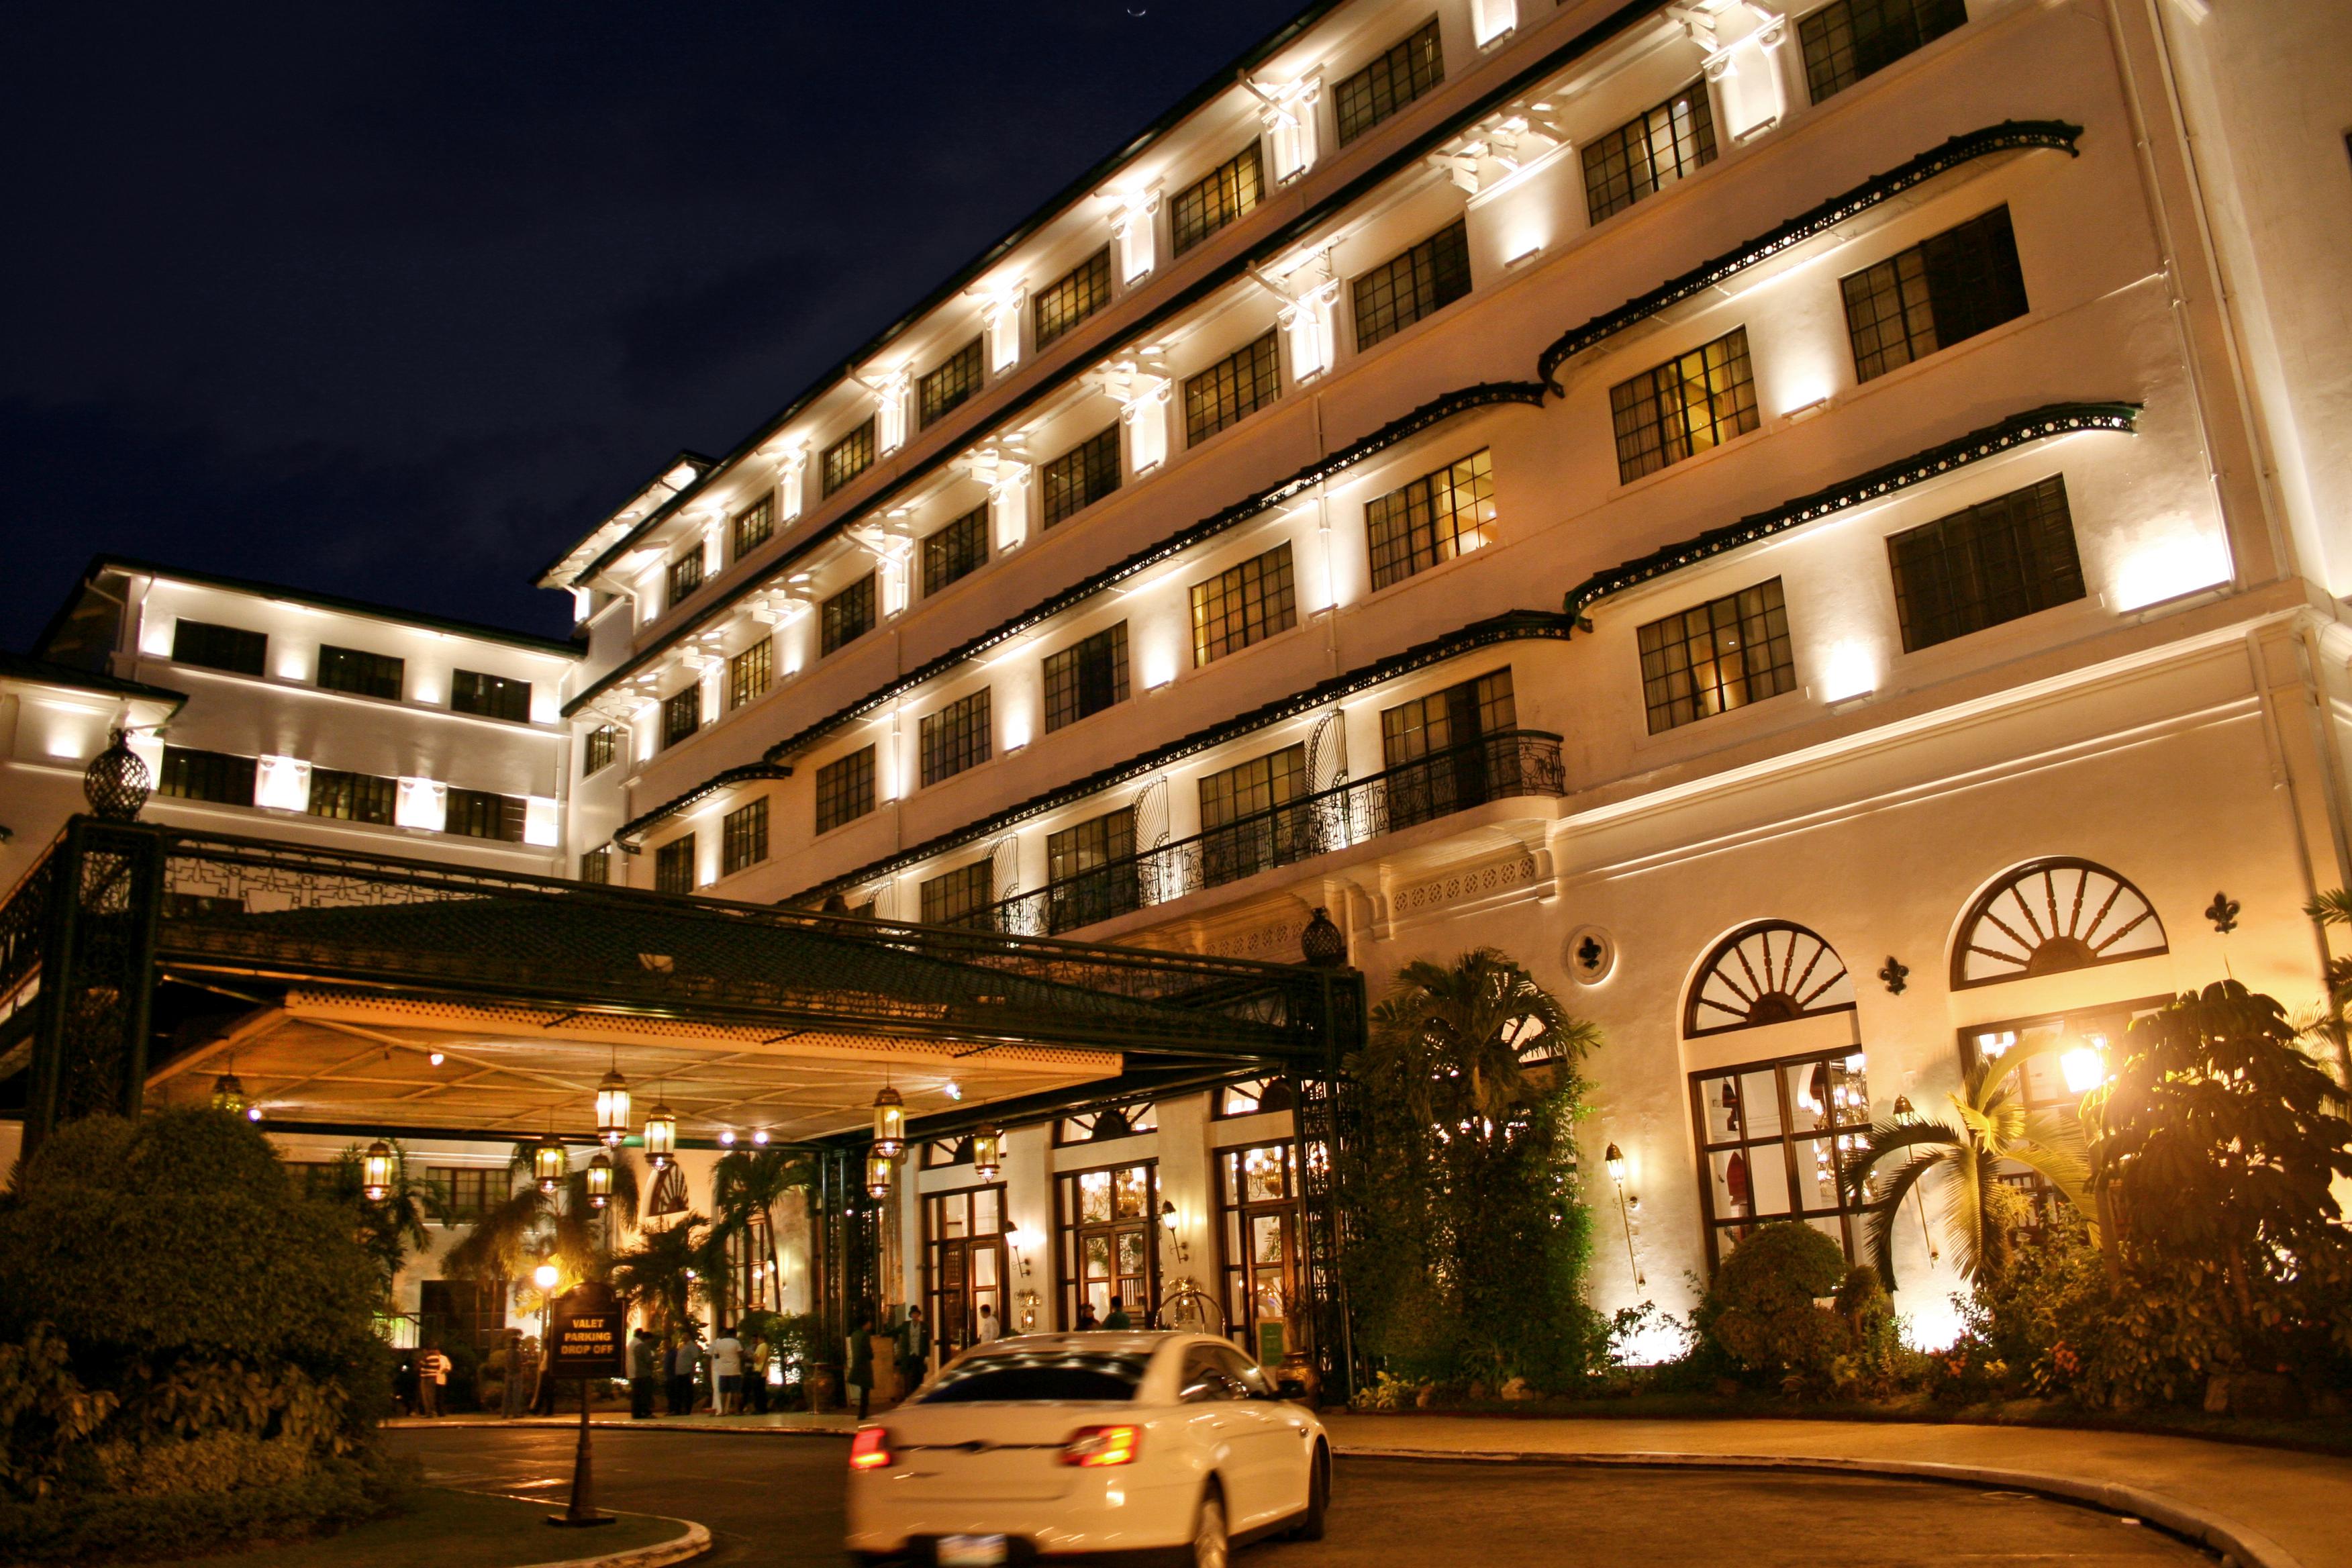 The Manila Hotel image